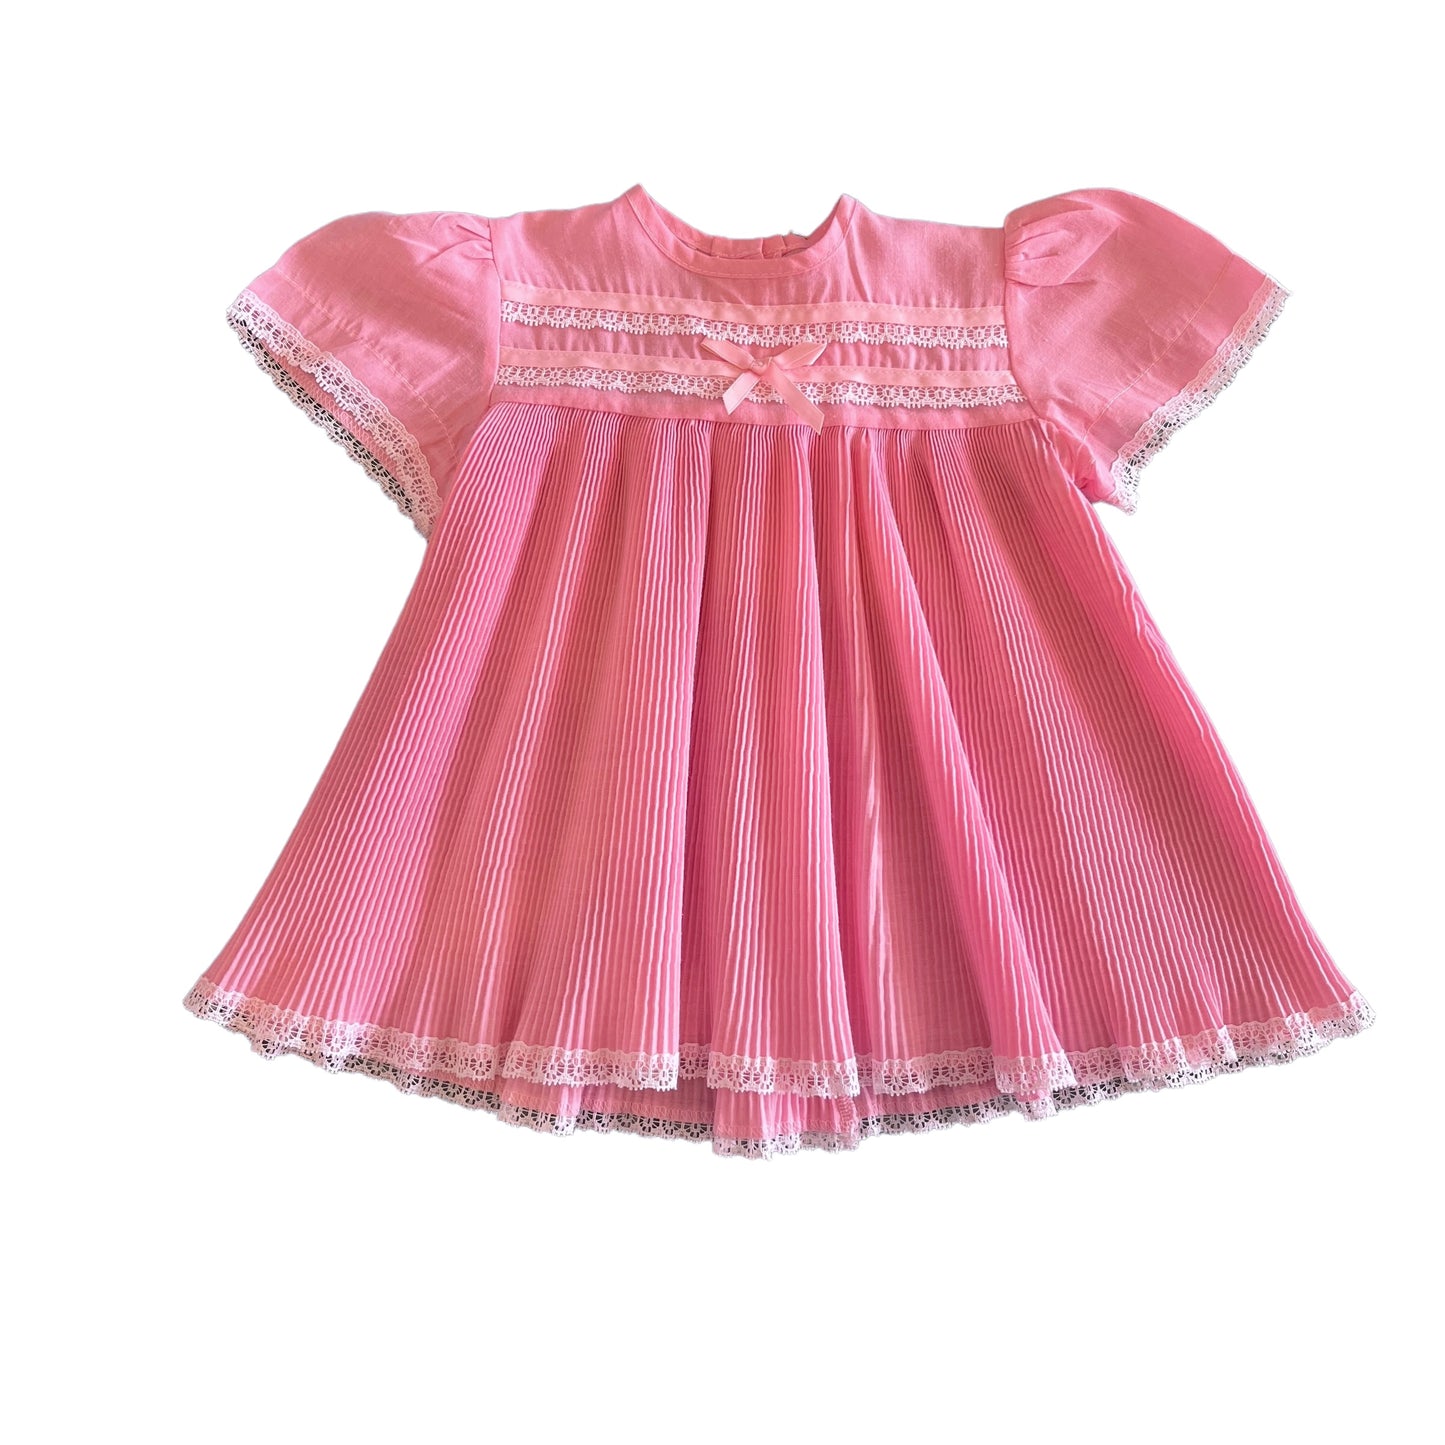 Vintage 1970s Pleated Pink Dress / 0-3M